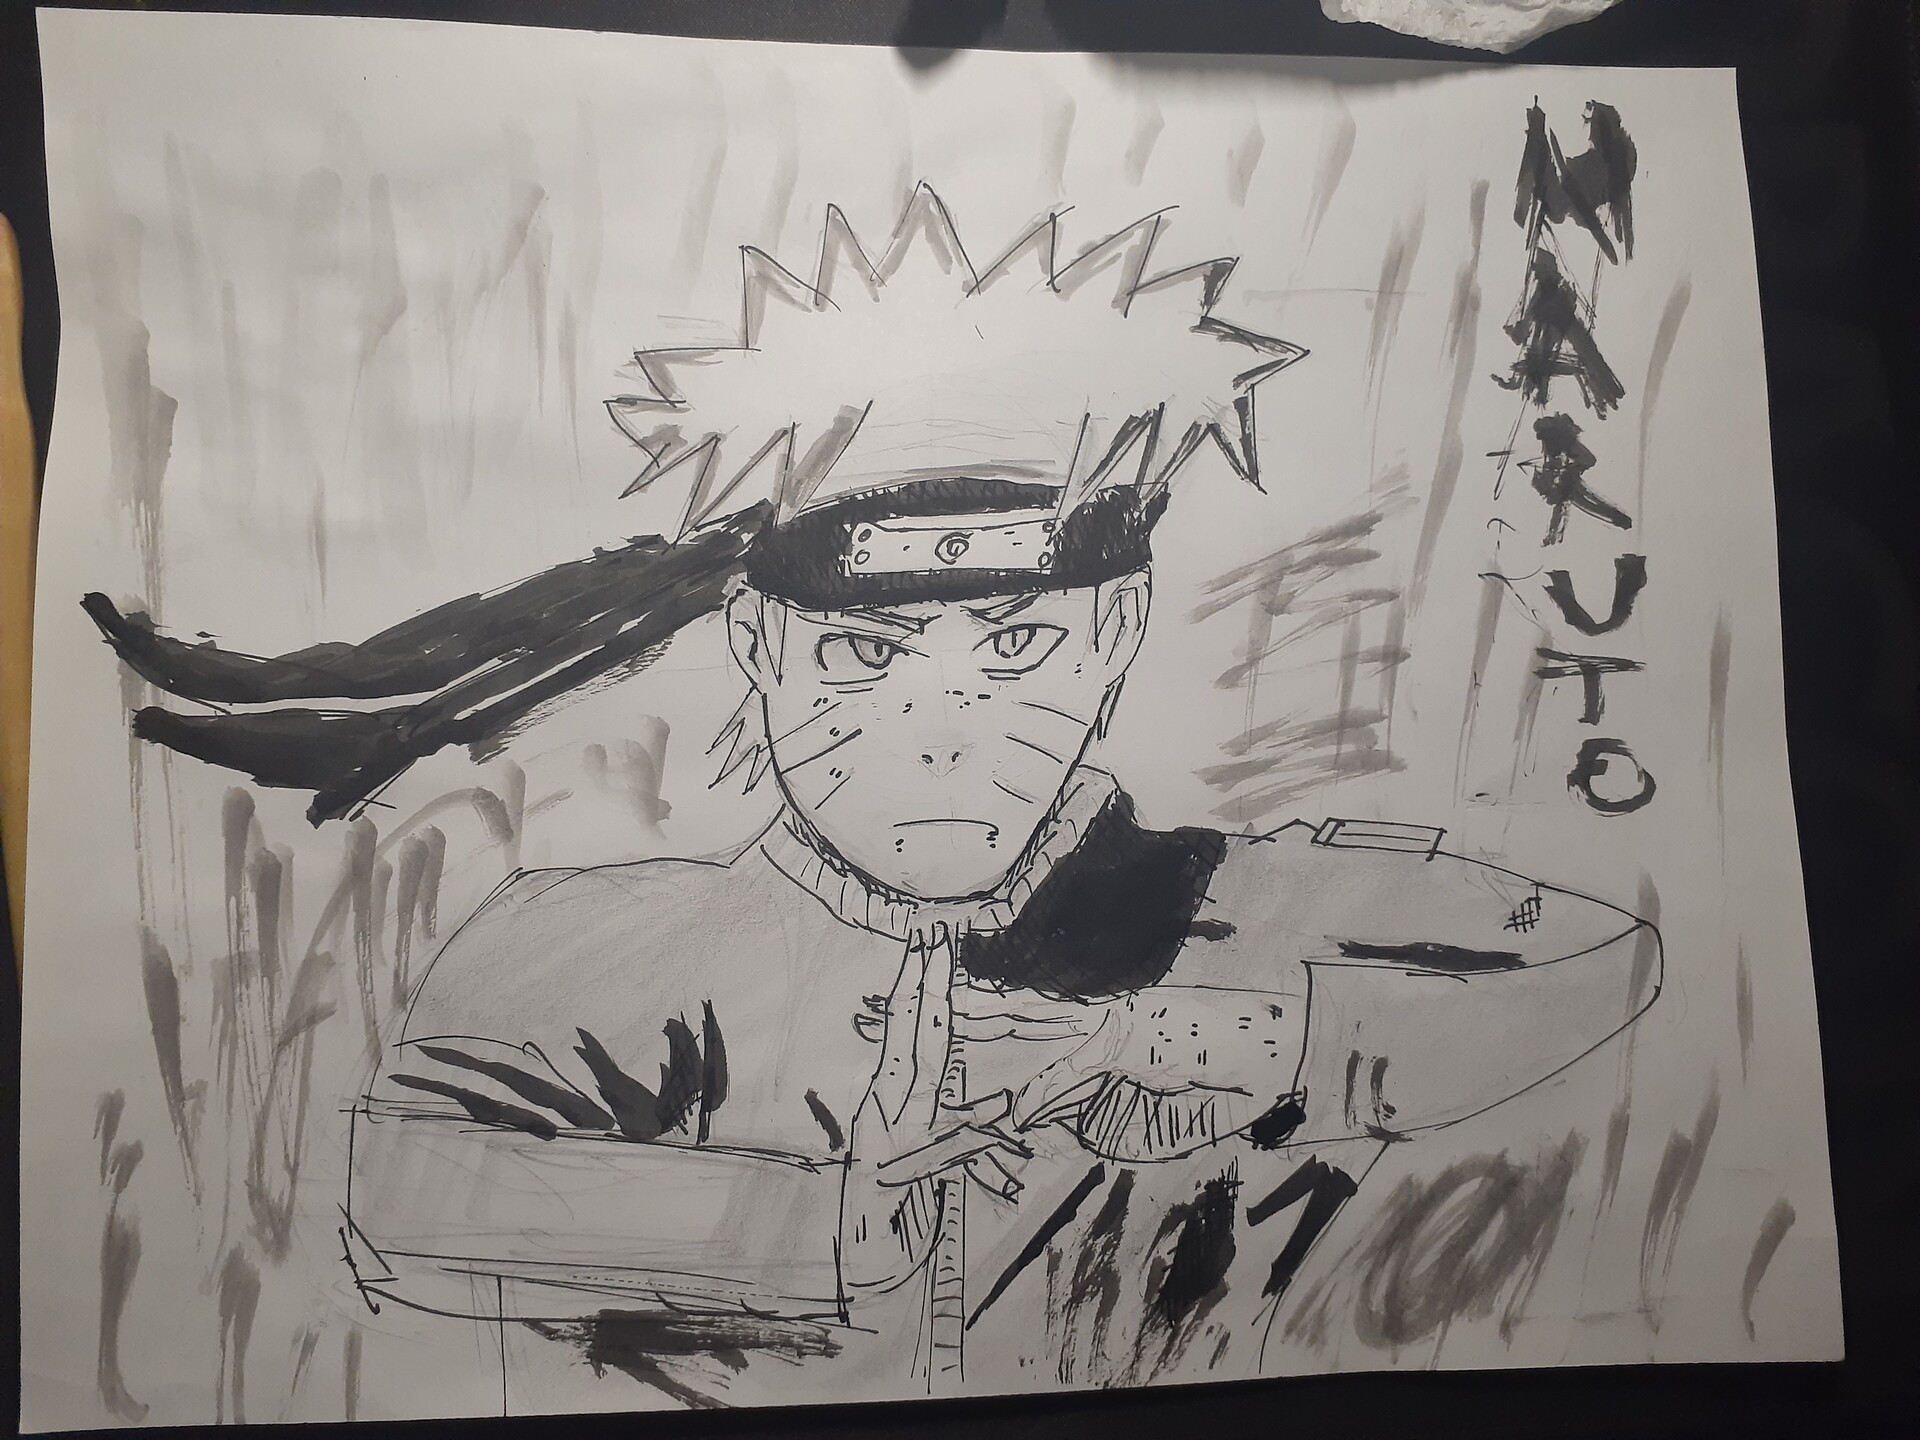 ArtStation - Naruto drawing